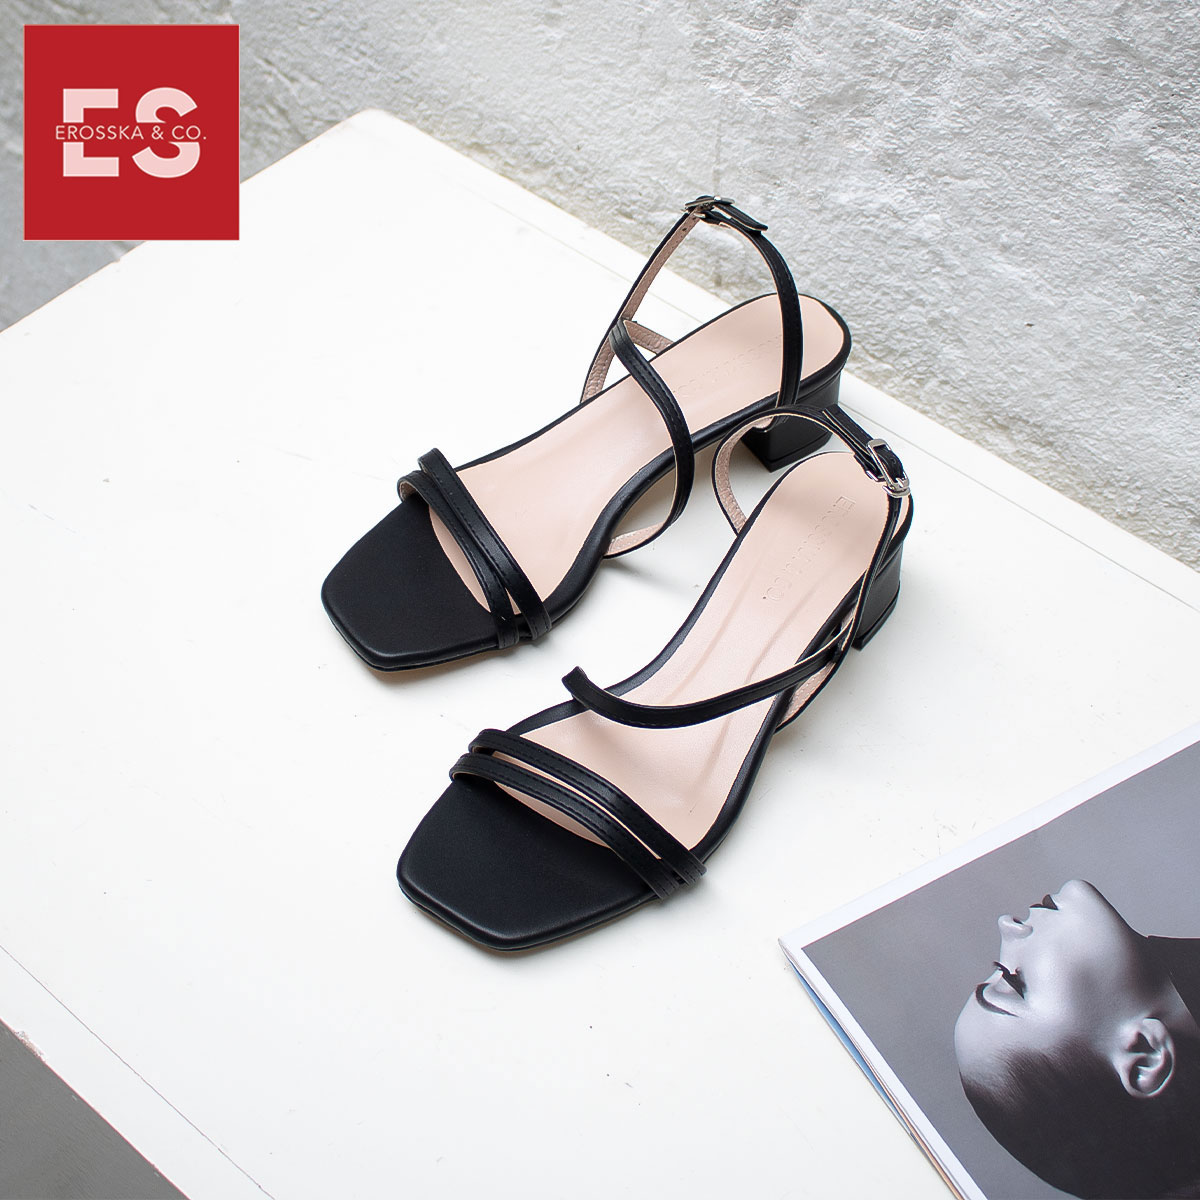 Giày sandal cao gót Erosska thời trang mũi vuông quai ngang phối dây mảnh cao 3cm EB031